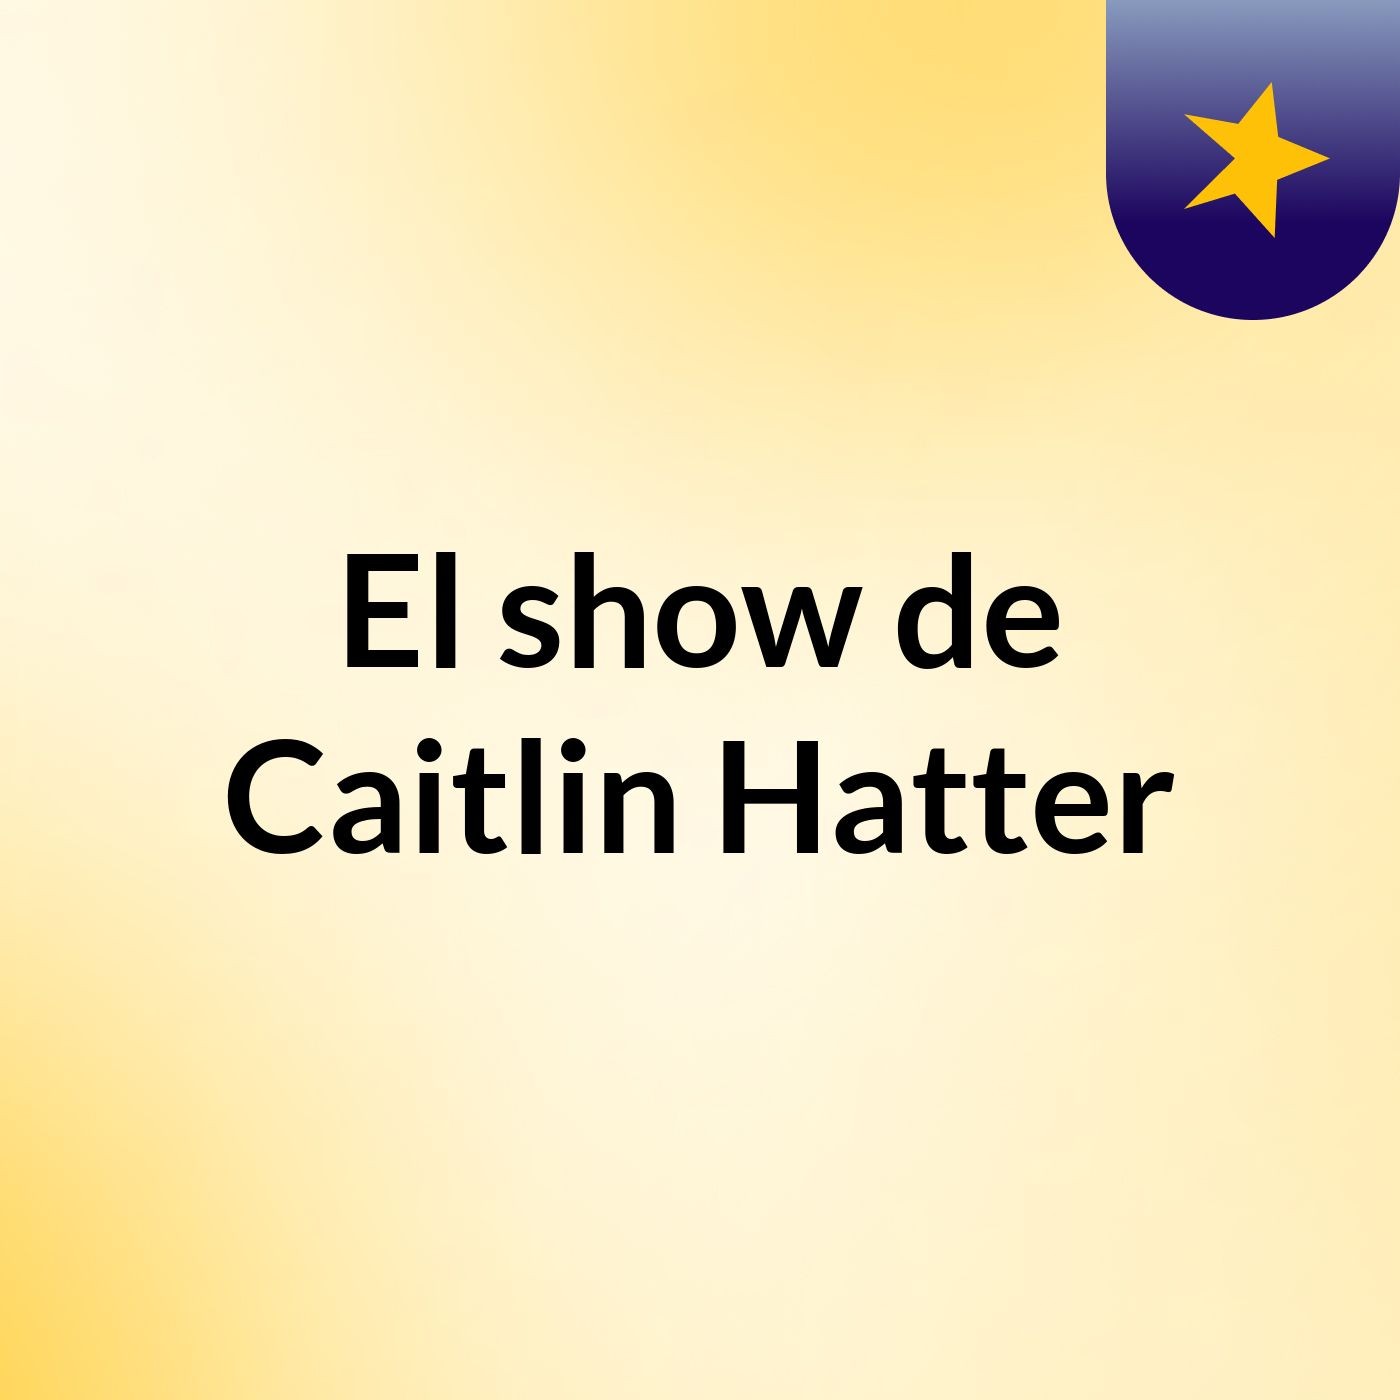 El show de Caitlin Hatter